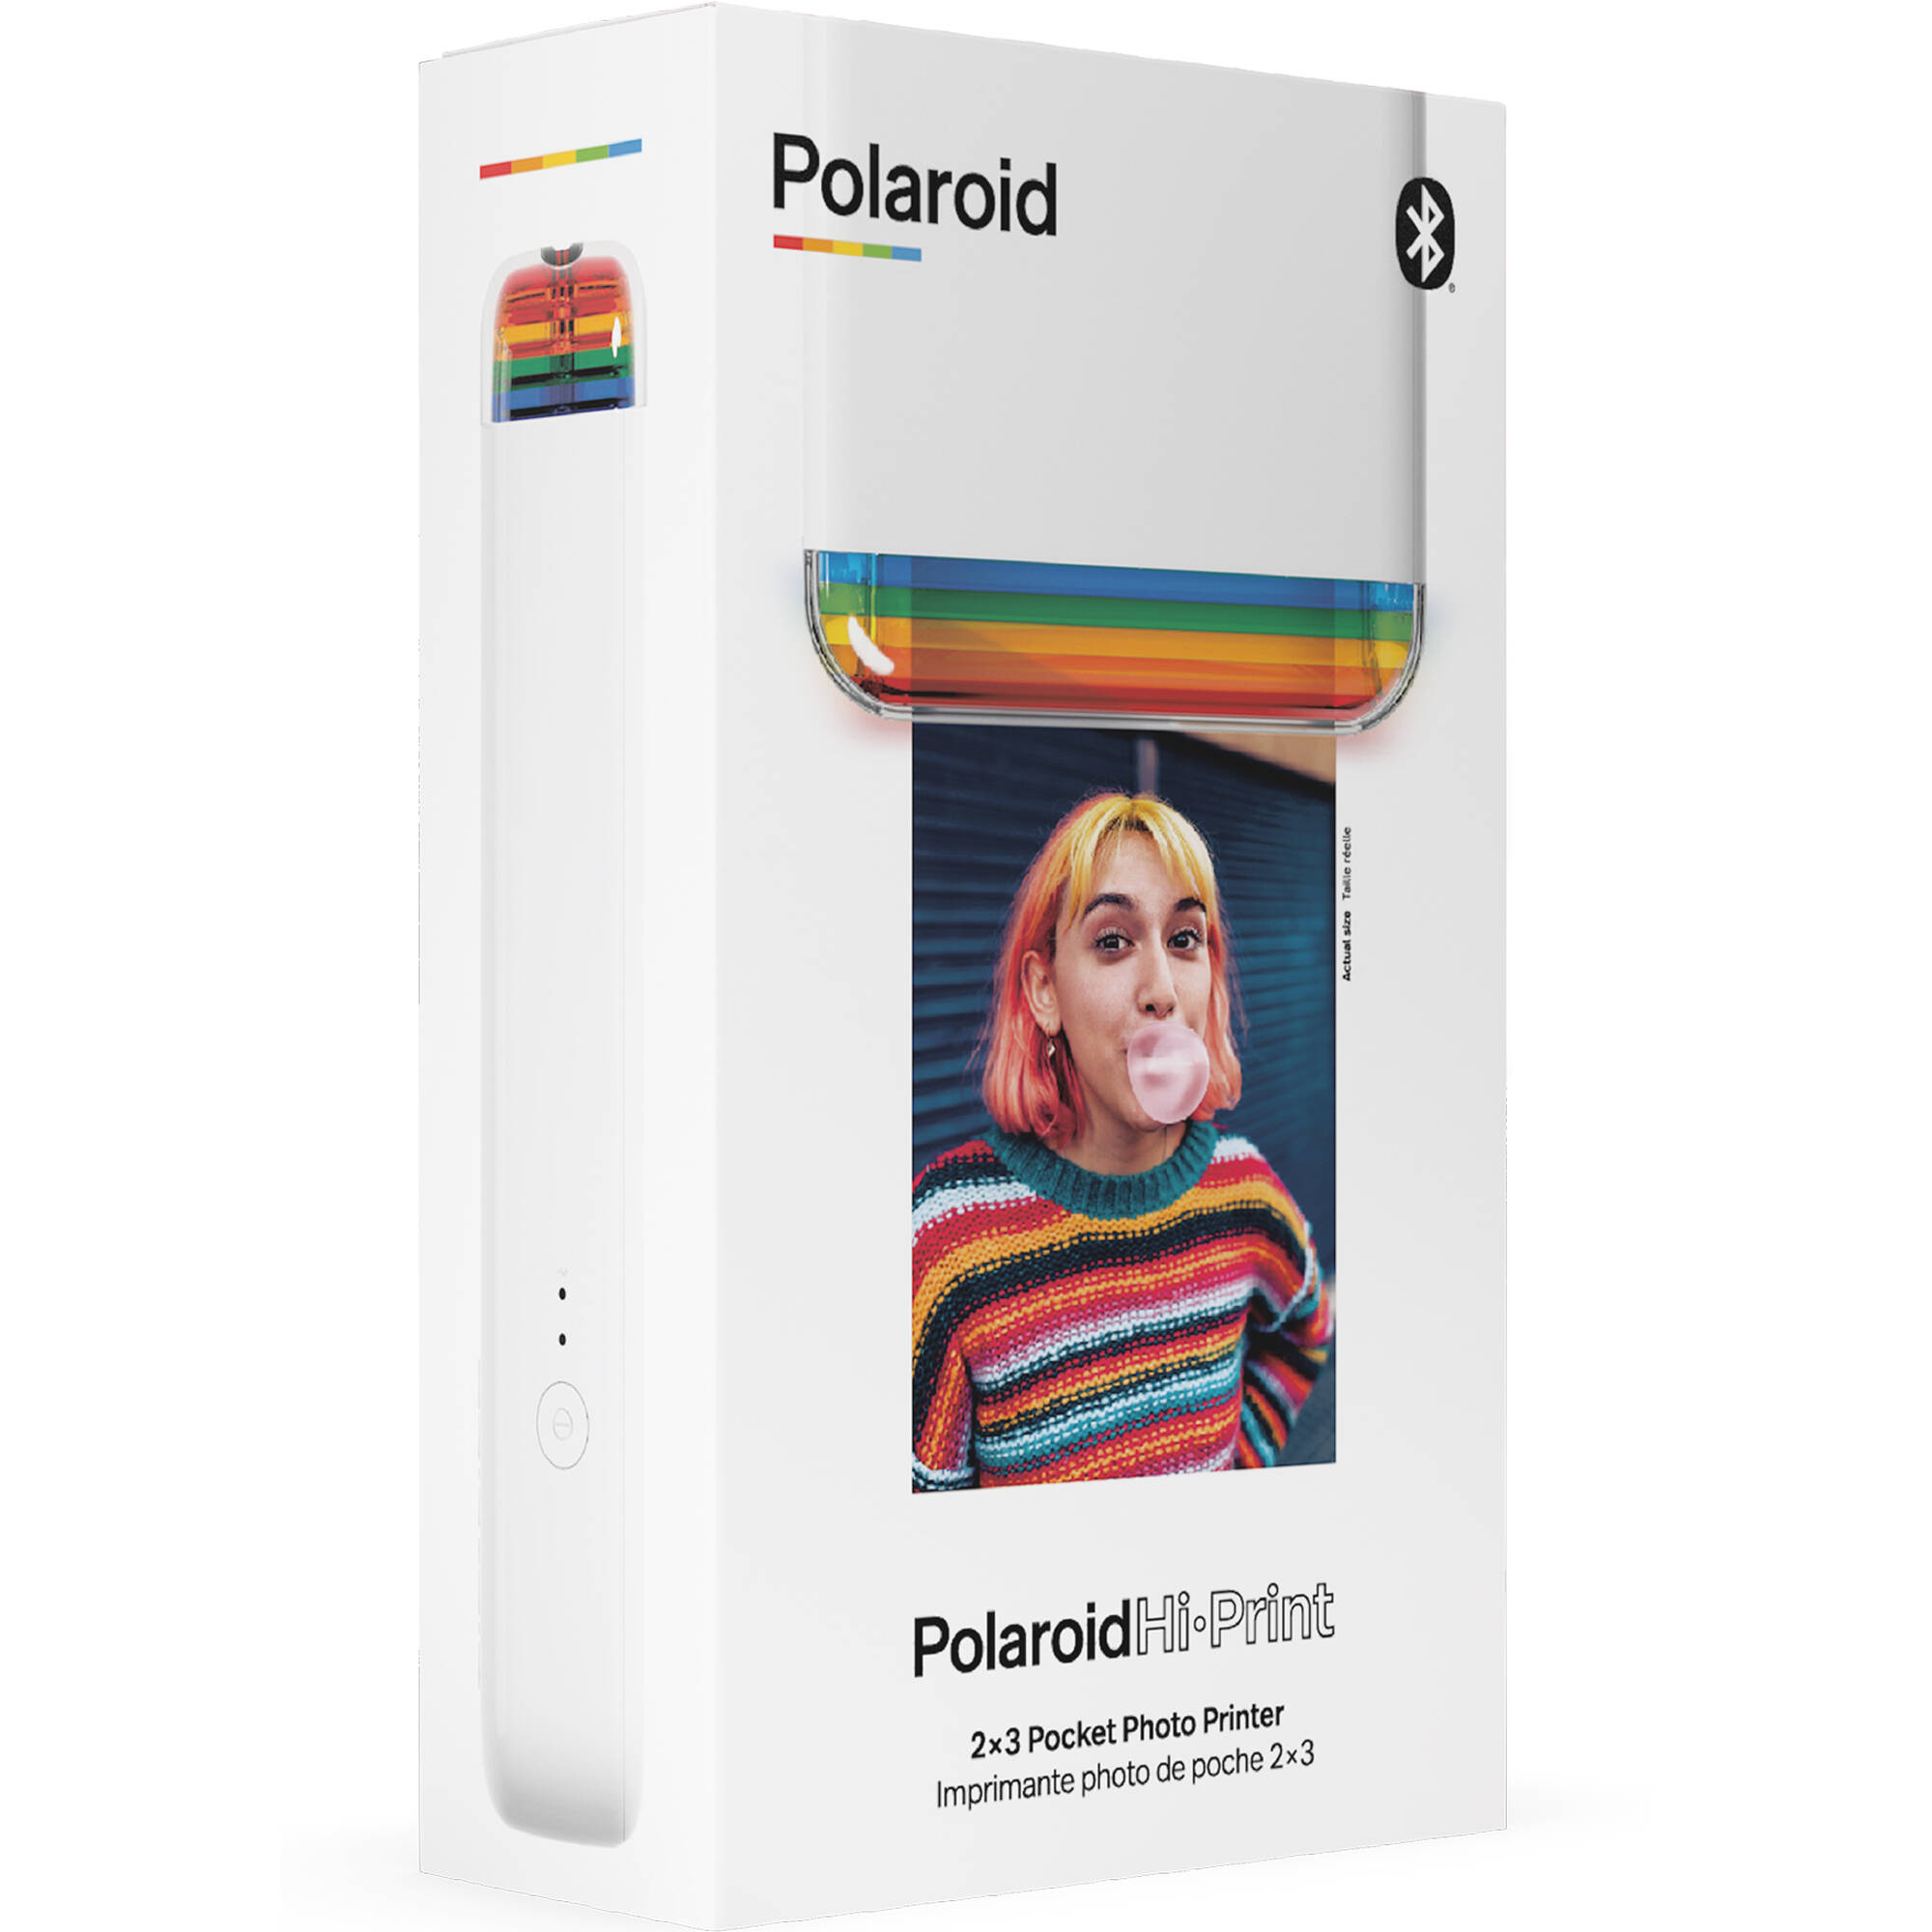 Pocket Photo Printer 9046 White Polaroid Polaroid Hi·Print 